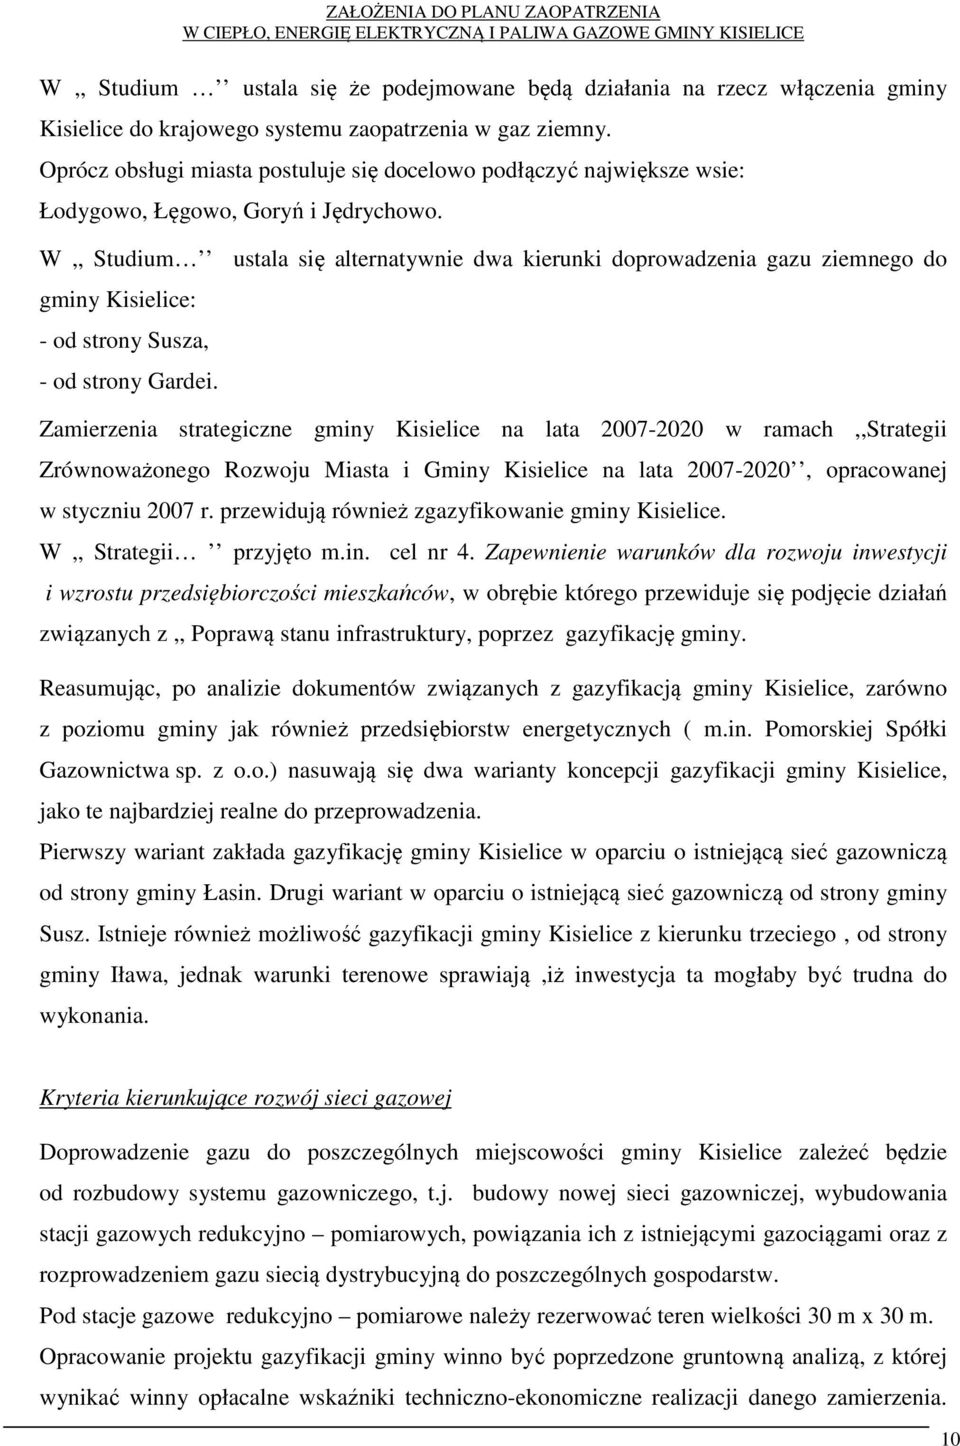 W,, Studium ustala się alternatywnie dwa kierunki doprowadzenia gazu ziemnego do gminy Kisielice: - od strony Susza, - od strony Gardei.